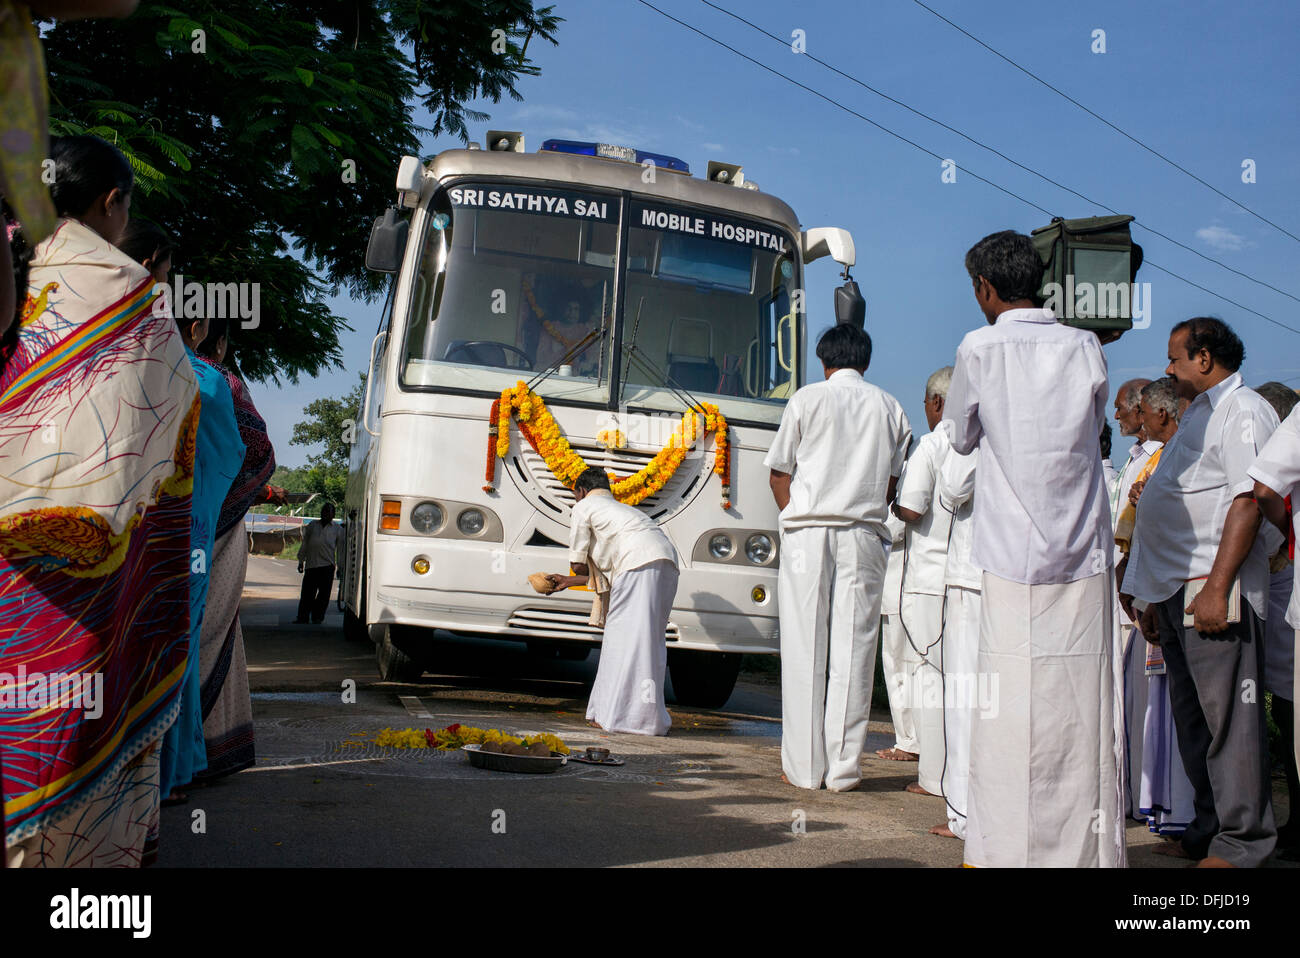 Sri Sathya Sai Baba mobile aufsuchende Krankenhaus Klinik Servicebus Ankunft in einem indischen Dorf. Andhra Pradesh, Indien Stockfoto